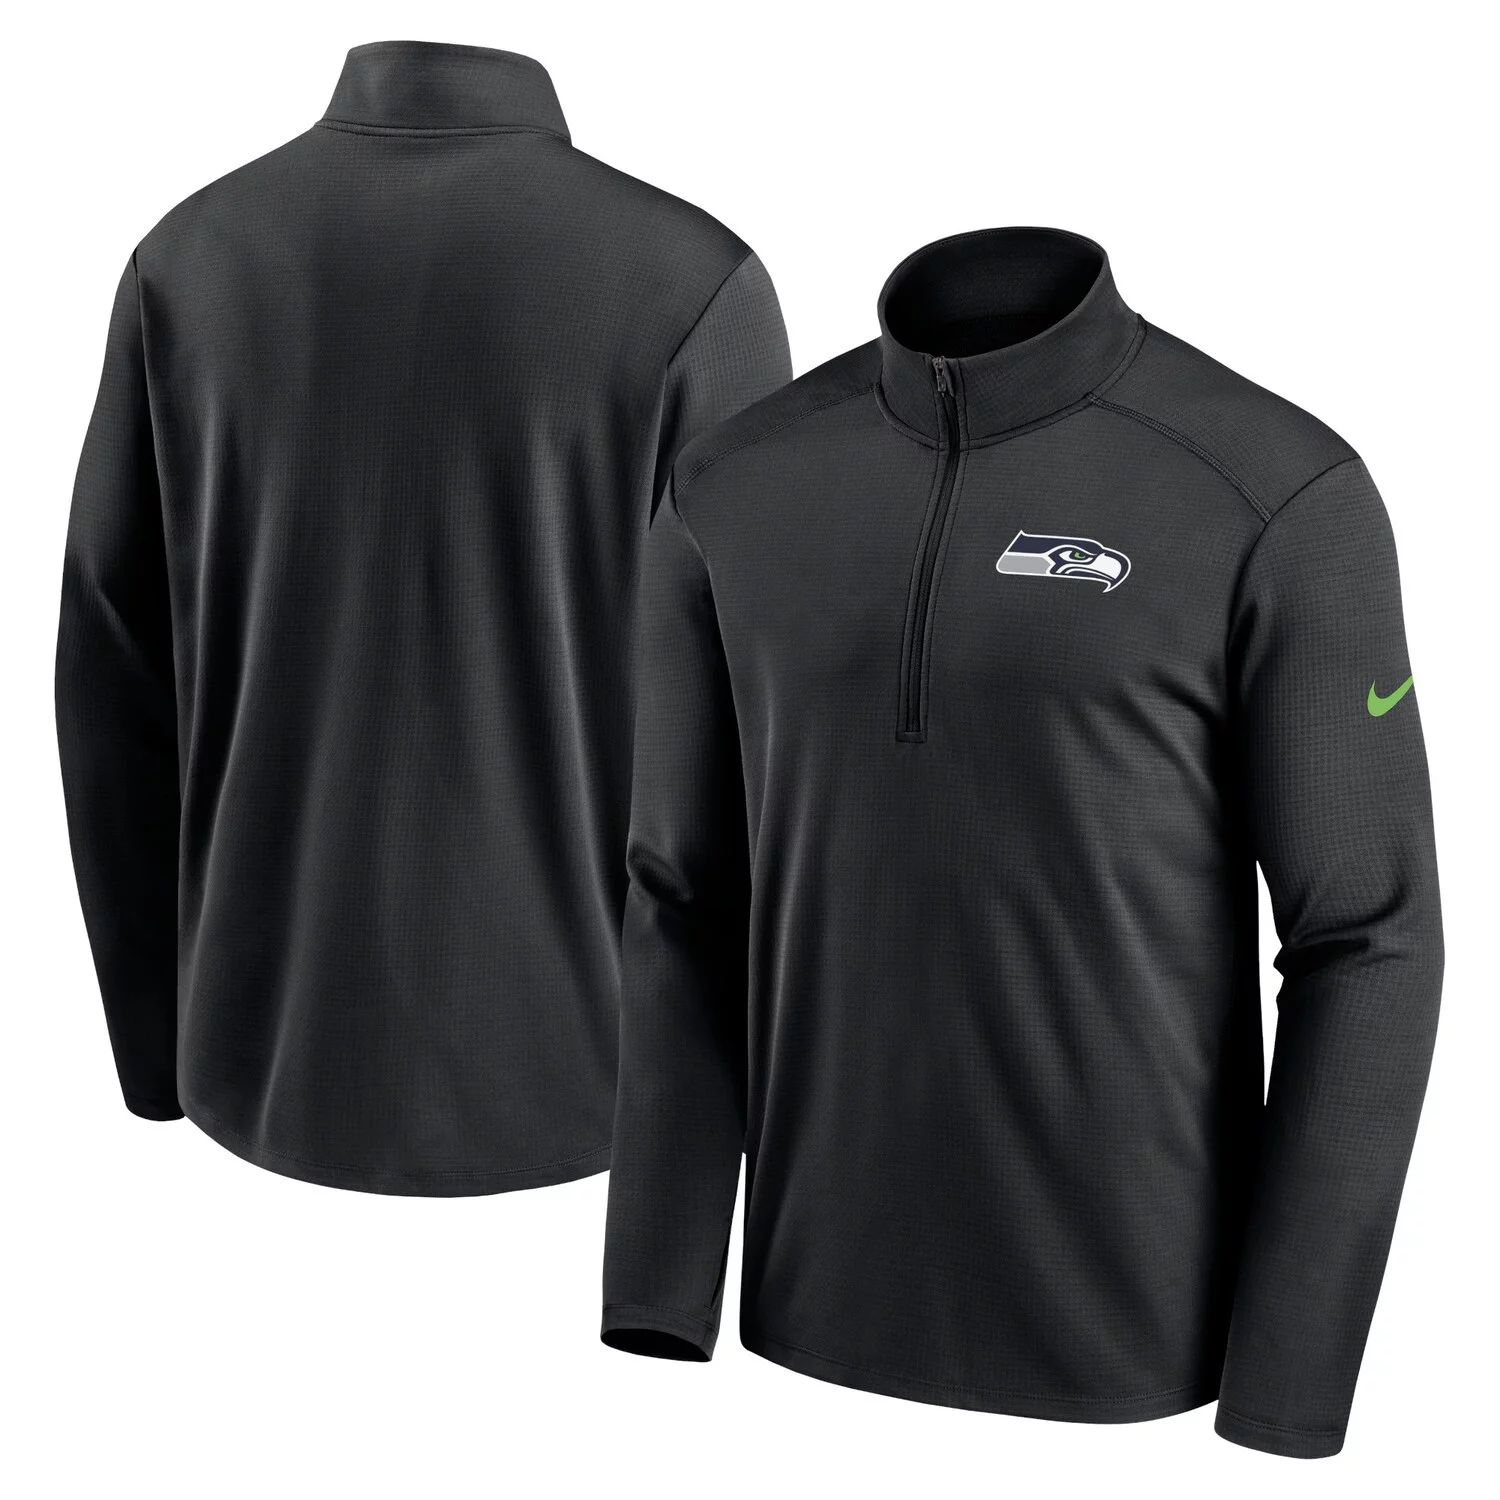 Мужская черная футболка с молнией до половины Seattle Seahawks Pacer Nike цена и фото